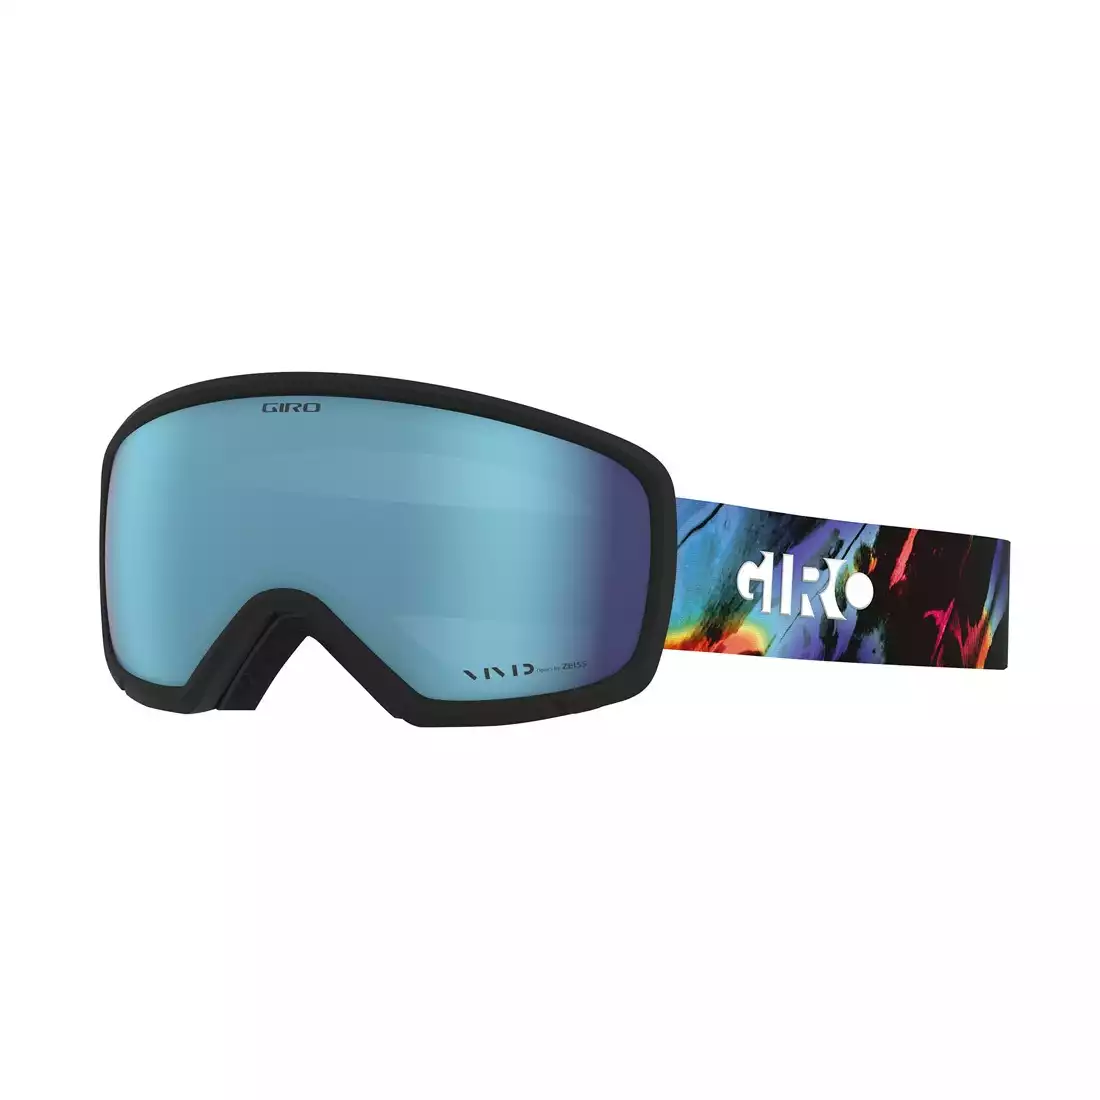 GIRO damskie gogle zimowe narciarskie/snowboardowe millie tropic (VIVID ROYAL 16% S3) GR-7119834